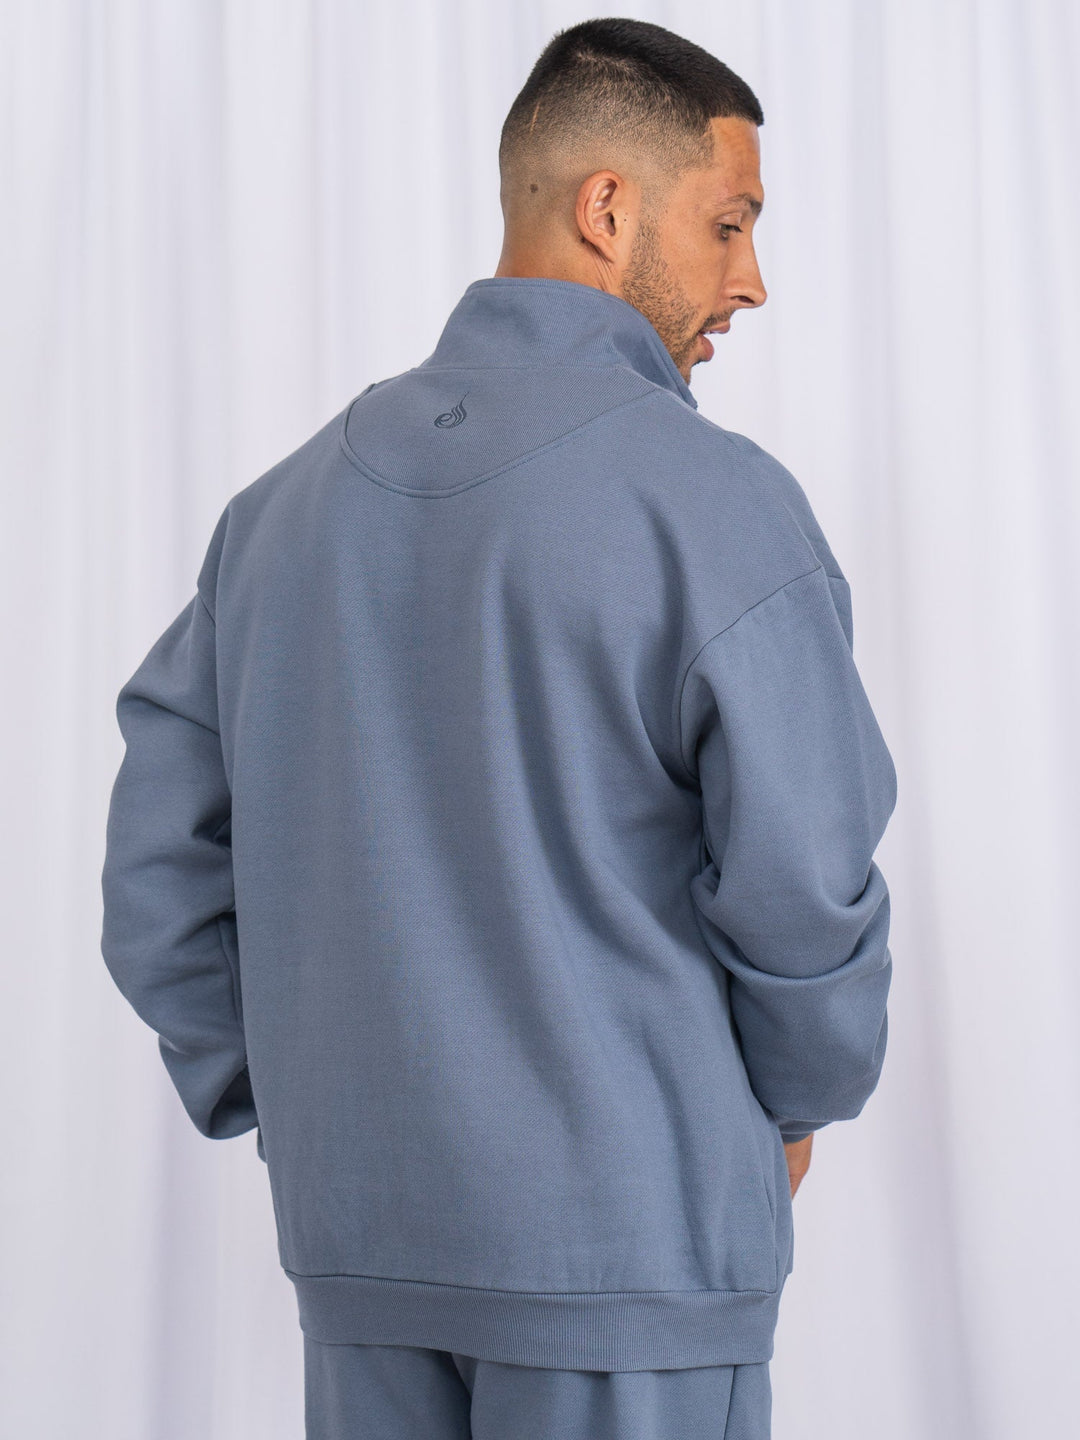 Unisex Half Zip Jumper - Denim Blue Clothing Ryderwear 